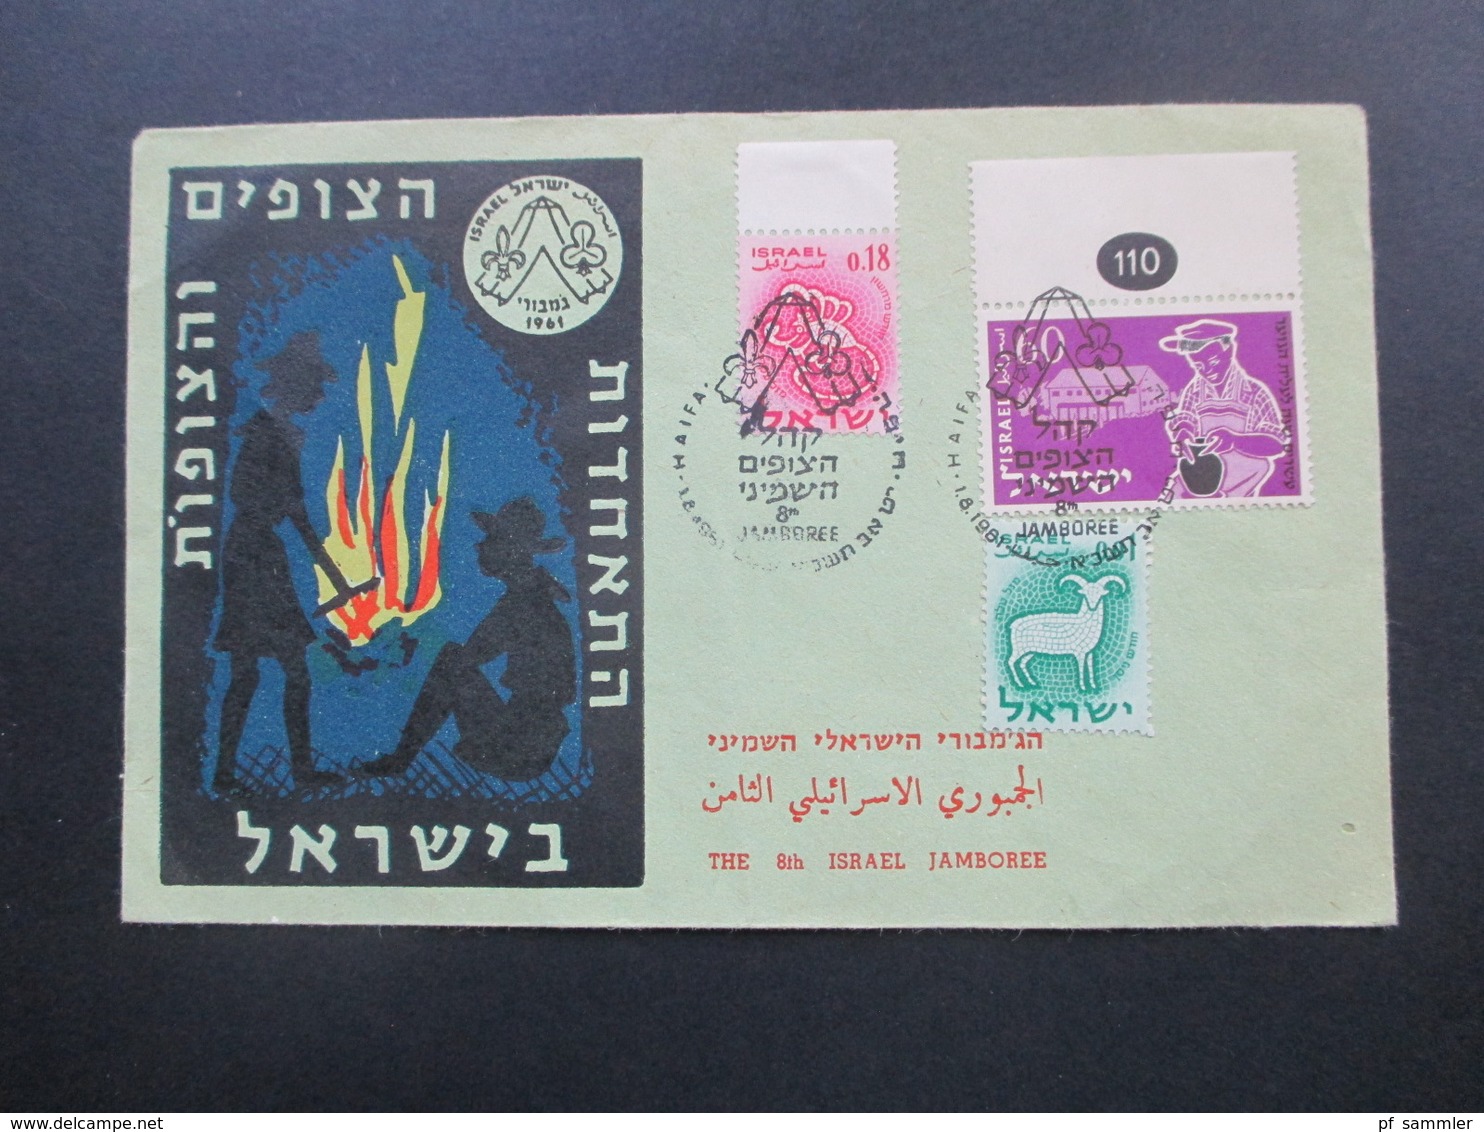 Israel 2 Sonderbelege 8th Israel Jamboree. Pfadfinder. SST / Marken Vom Bogenrand. Lagerfeuer / Zelt / Boy Scouts 1961 - Briefe U. Dokumente